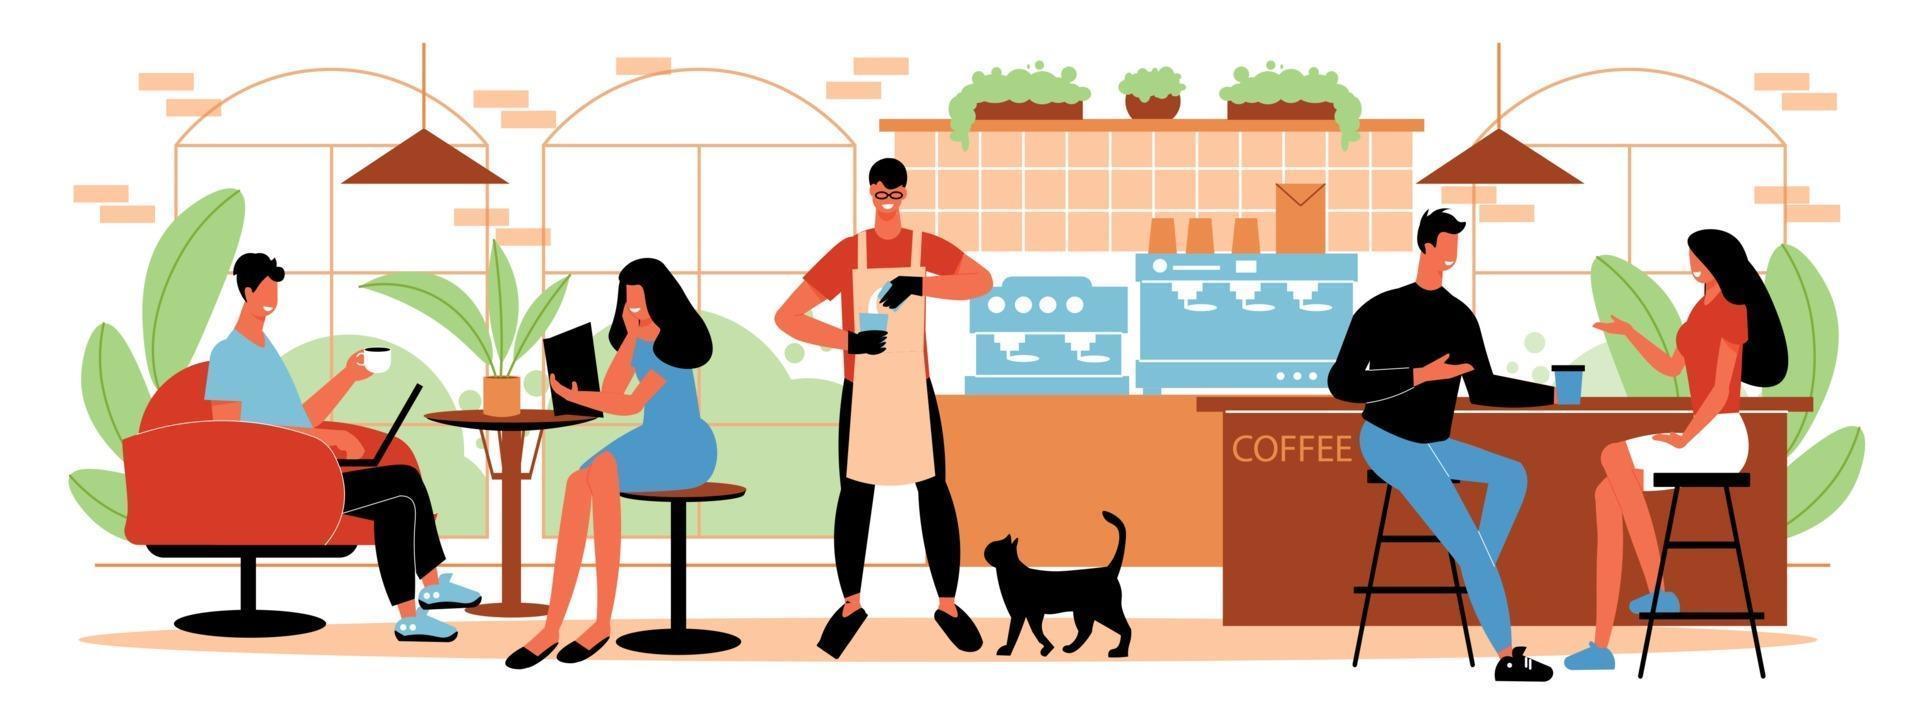 ilustração horizontal de pessoas no café vetor